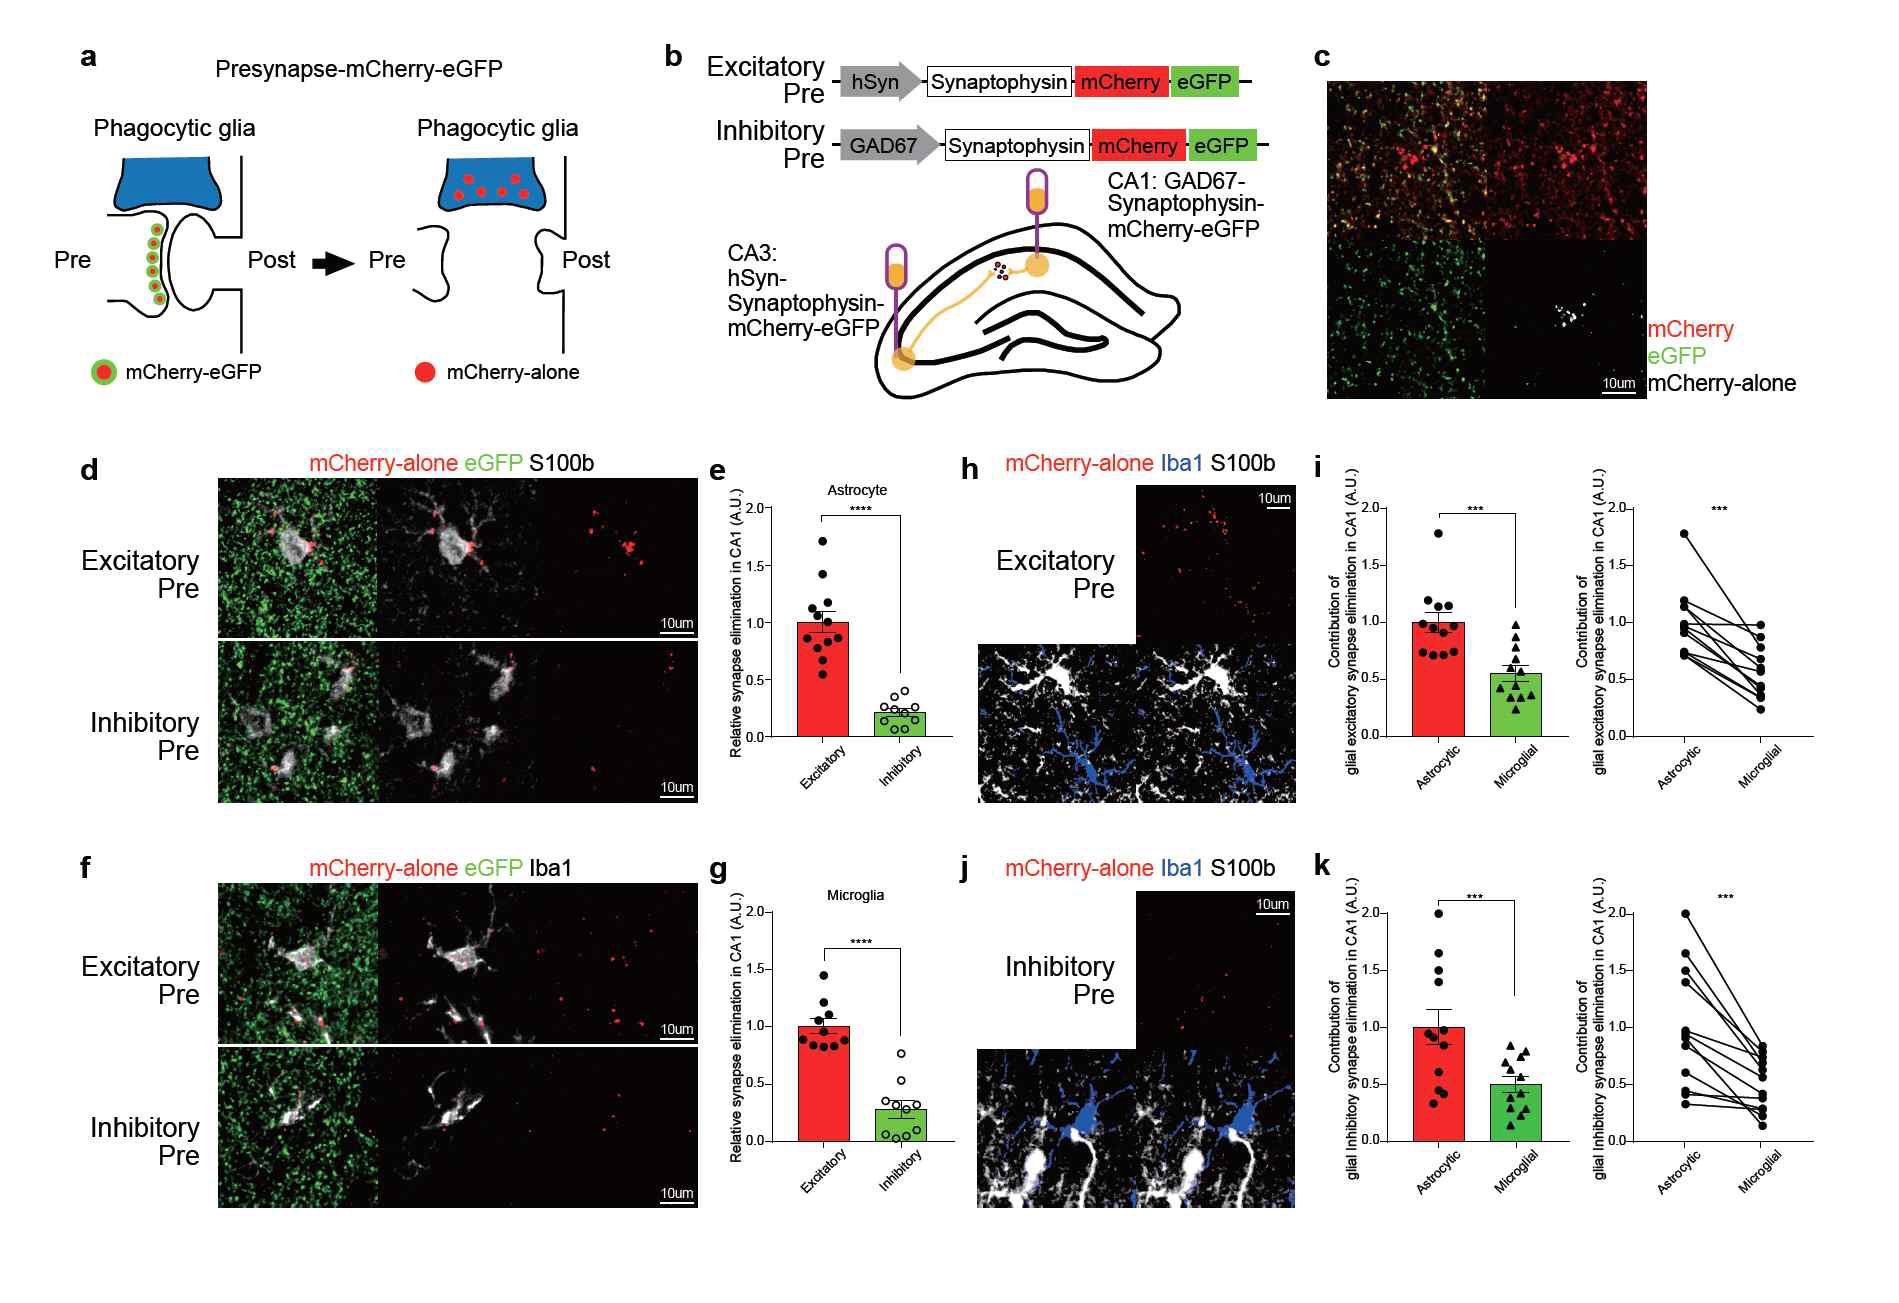 성체 해마에서 지속적으로 일어나는 synapse 제거 과정에서 astrocyte가 microglia보다 dominant 한 역할을 수행하고 있으며 이들이 주로 excitatory synapse를 제거하고 있음을 발견